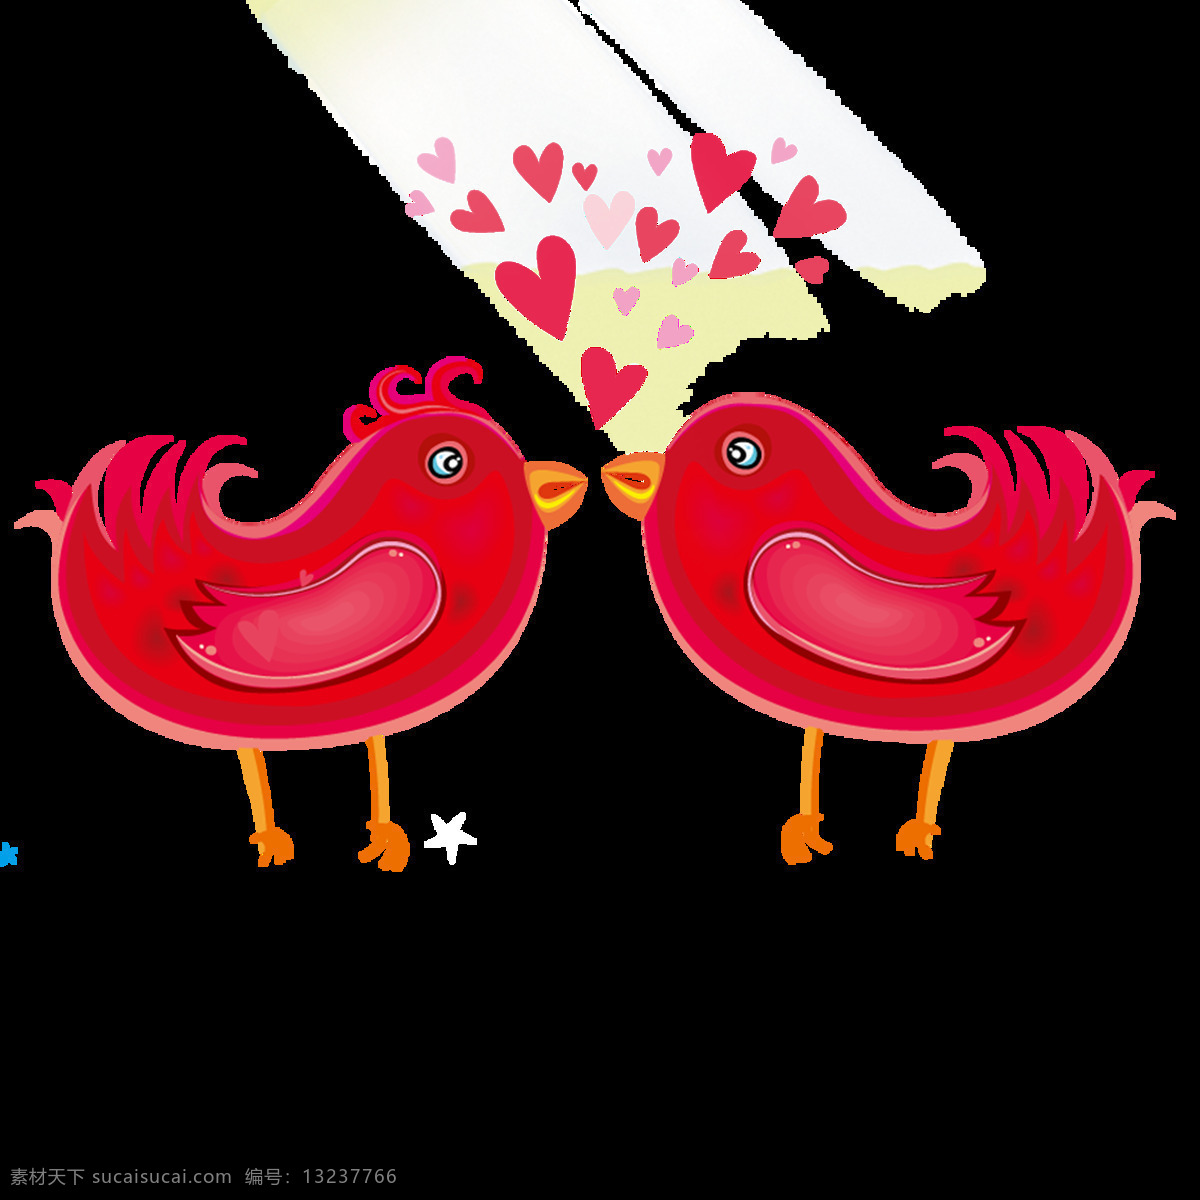 唯美 创意 鸟儿 绘画 美观 红色的小鸟 生动 形象 活泼